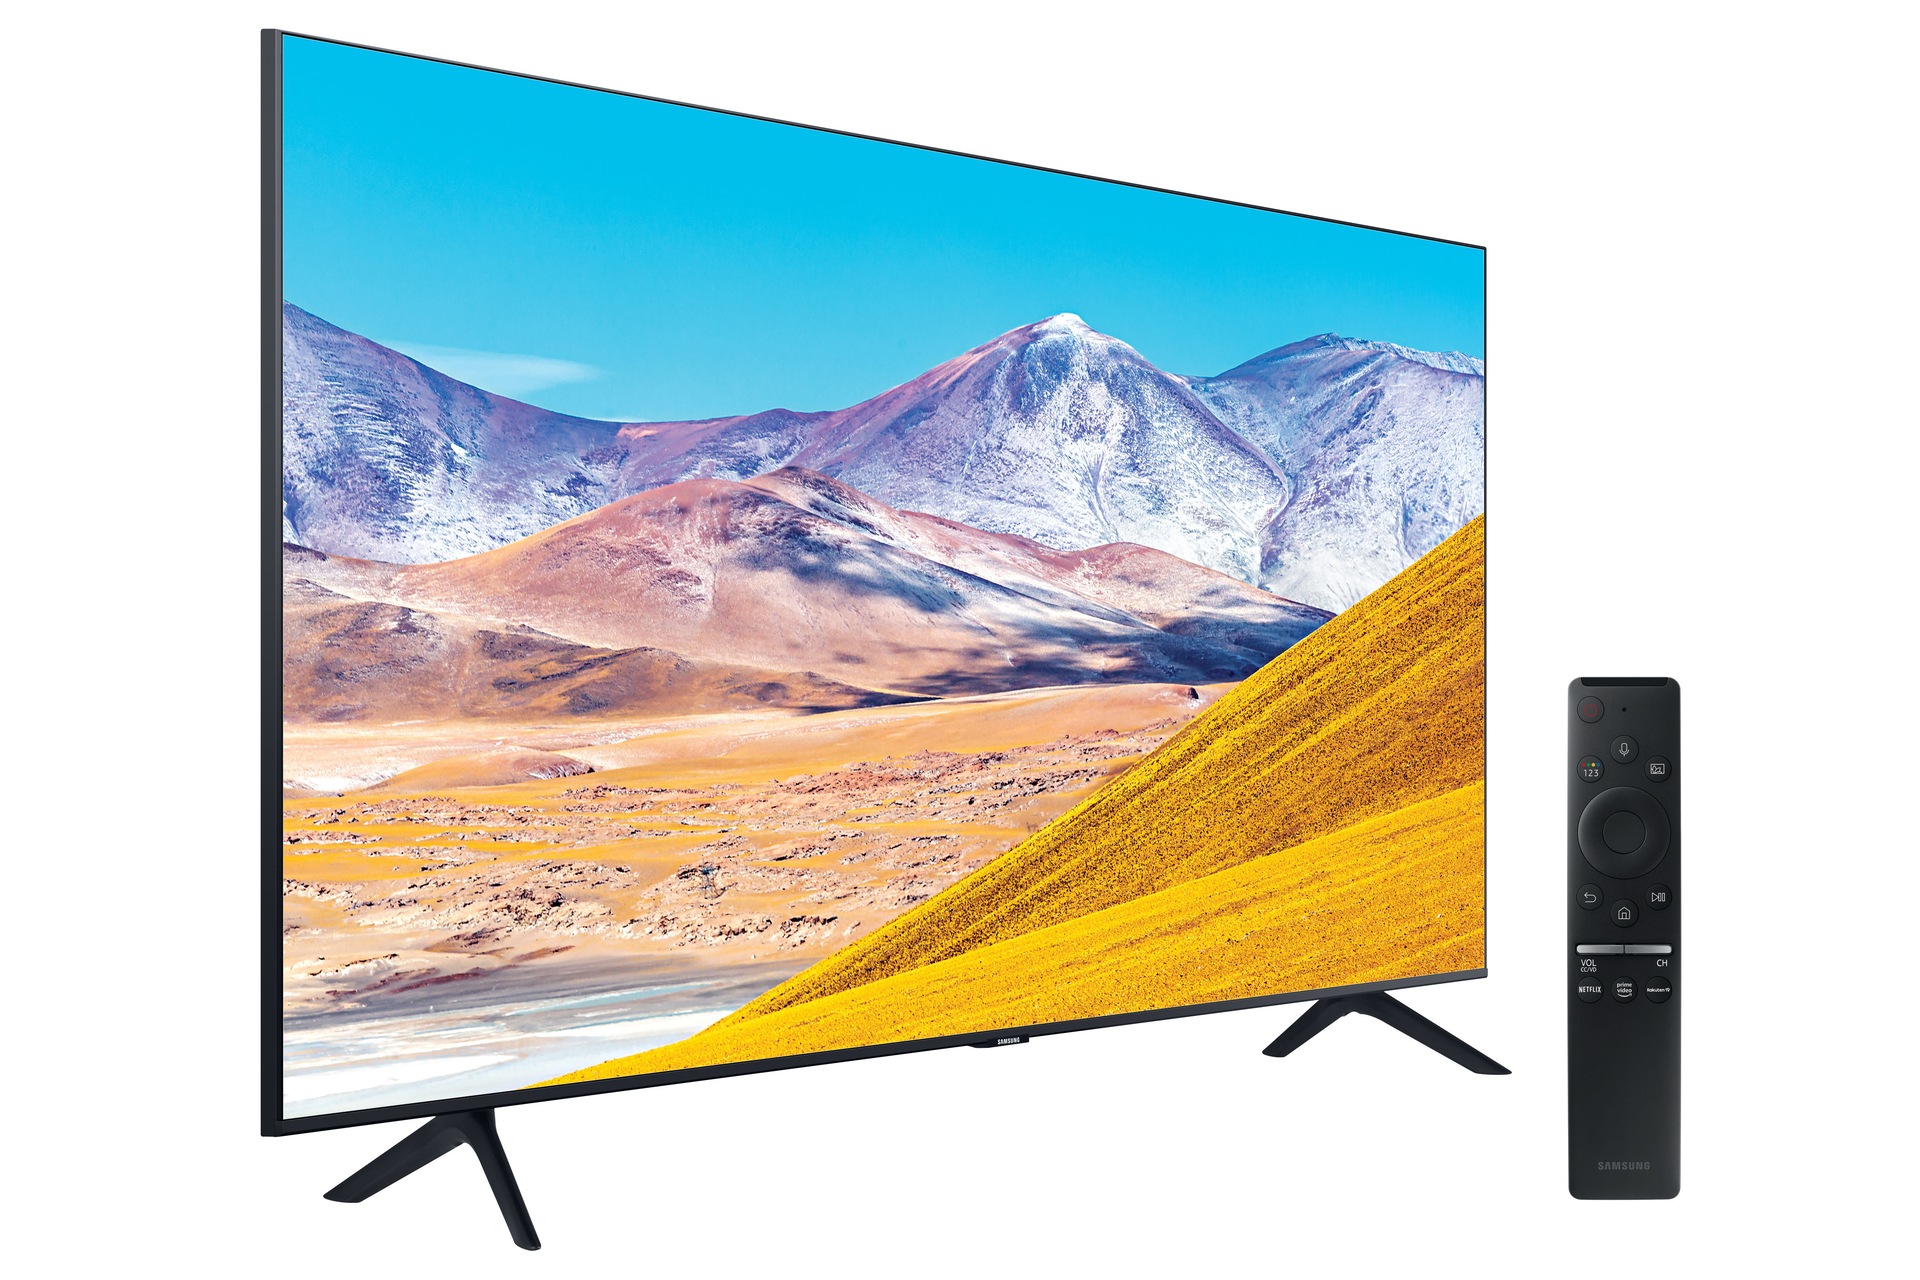 ✓ Opiniones del Samsung Crystal UHD 2020 50TU8005 TV [2021]